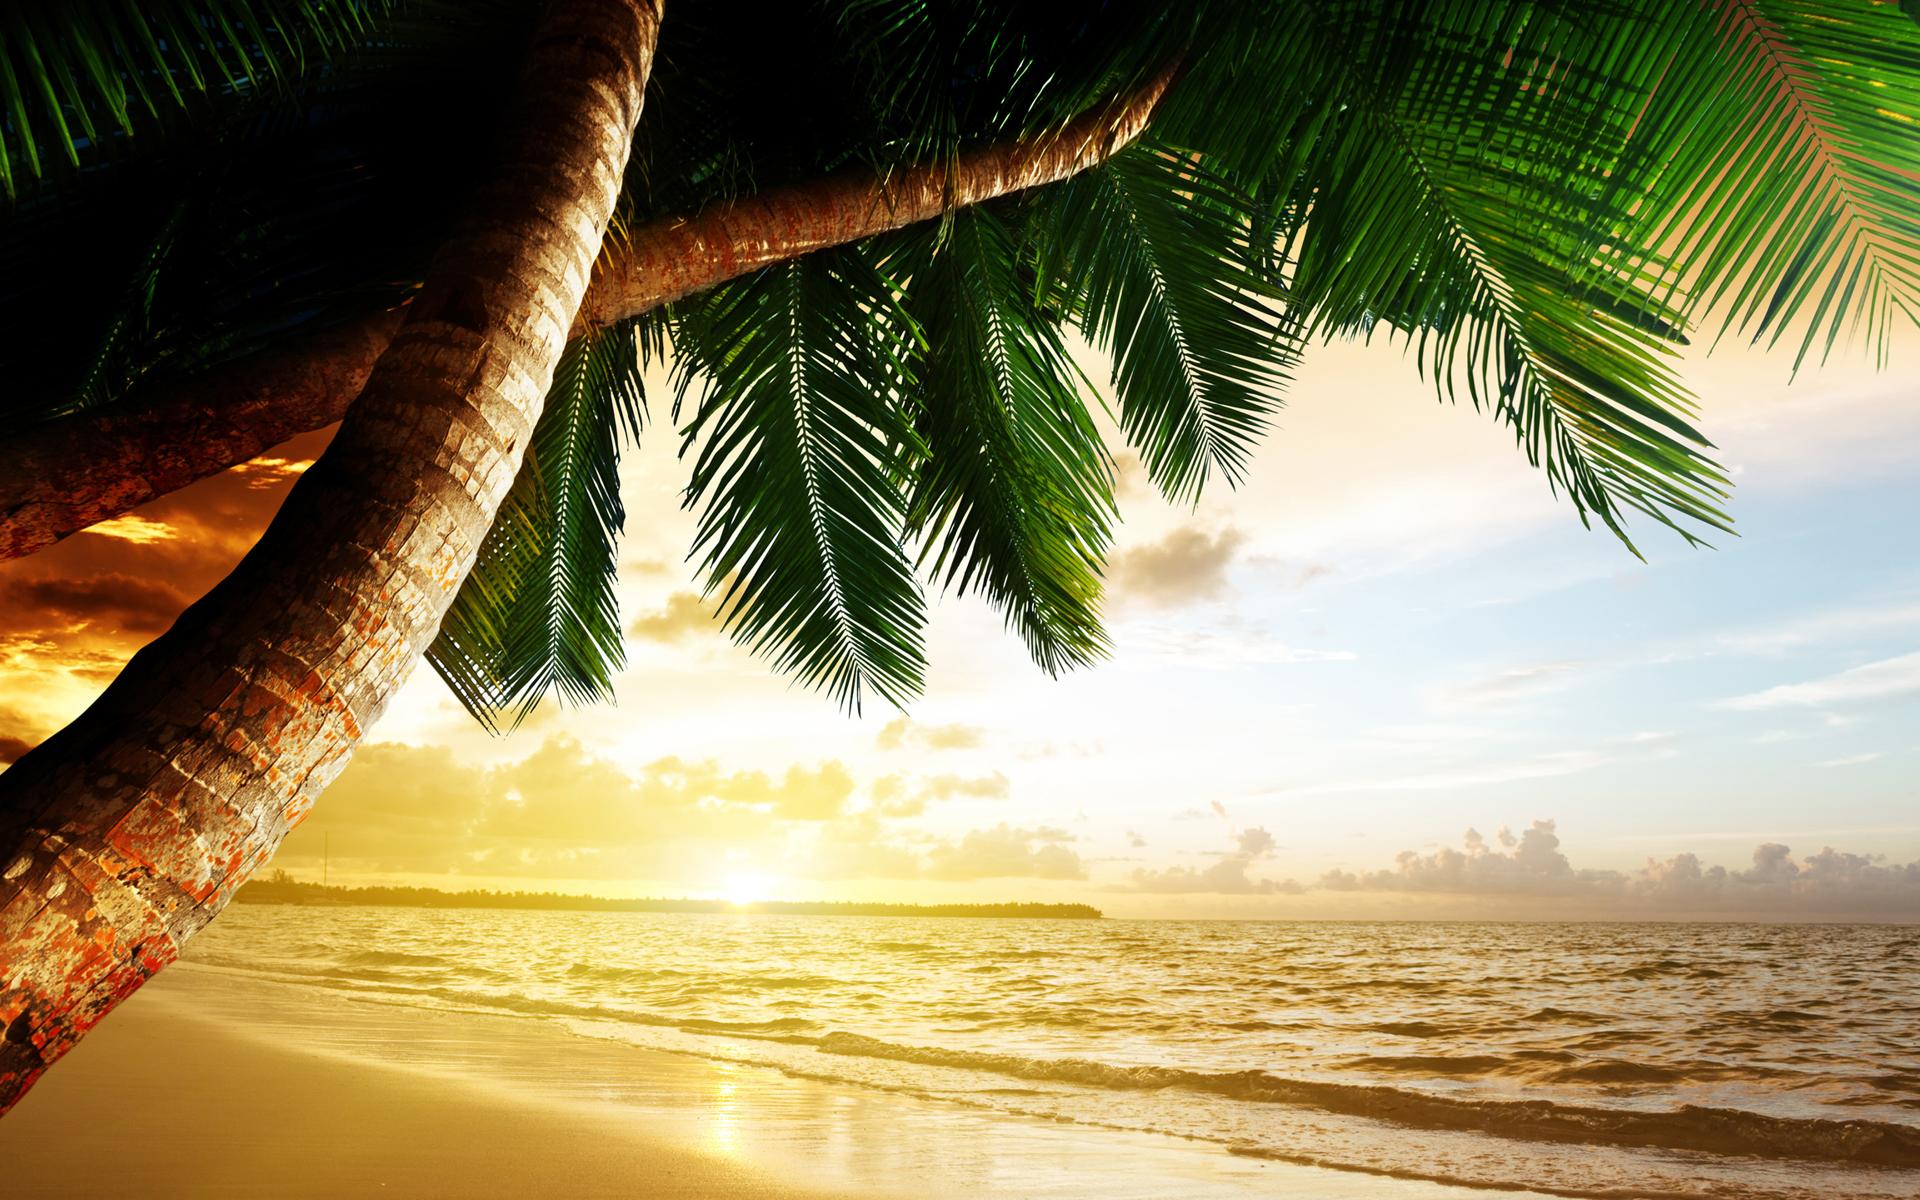 一份芭堤雅沙滩海岛玩乐攻略-2019芭堤雅旅游榜单-芭堤雅必体验-自助游攻略-去哪儿攻略